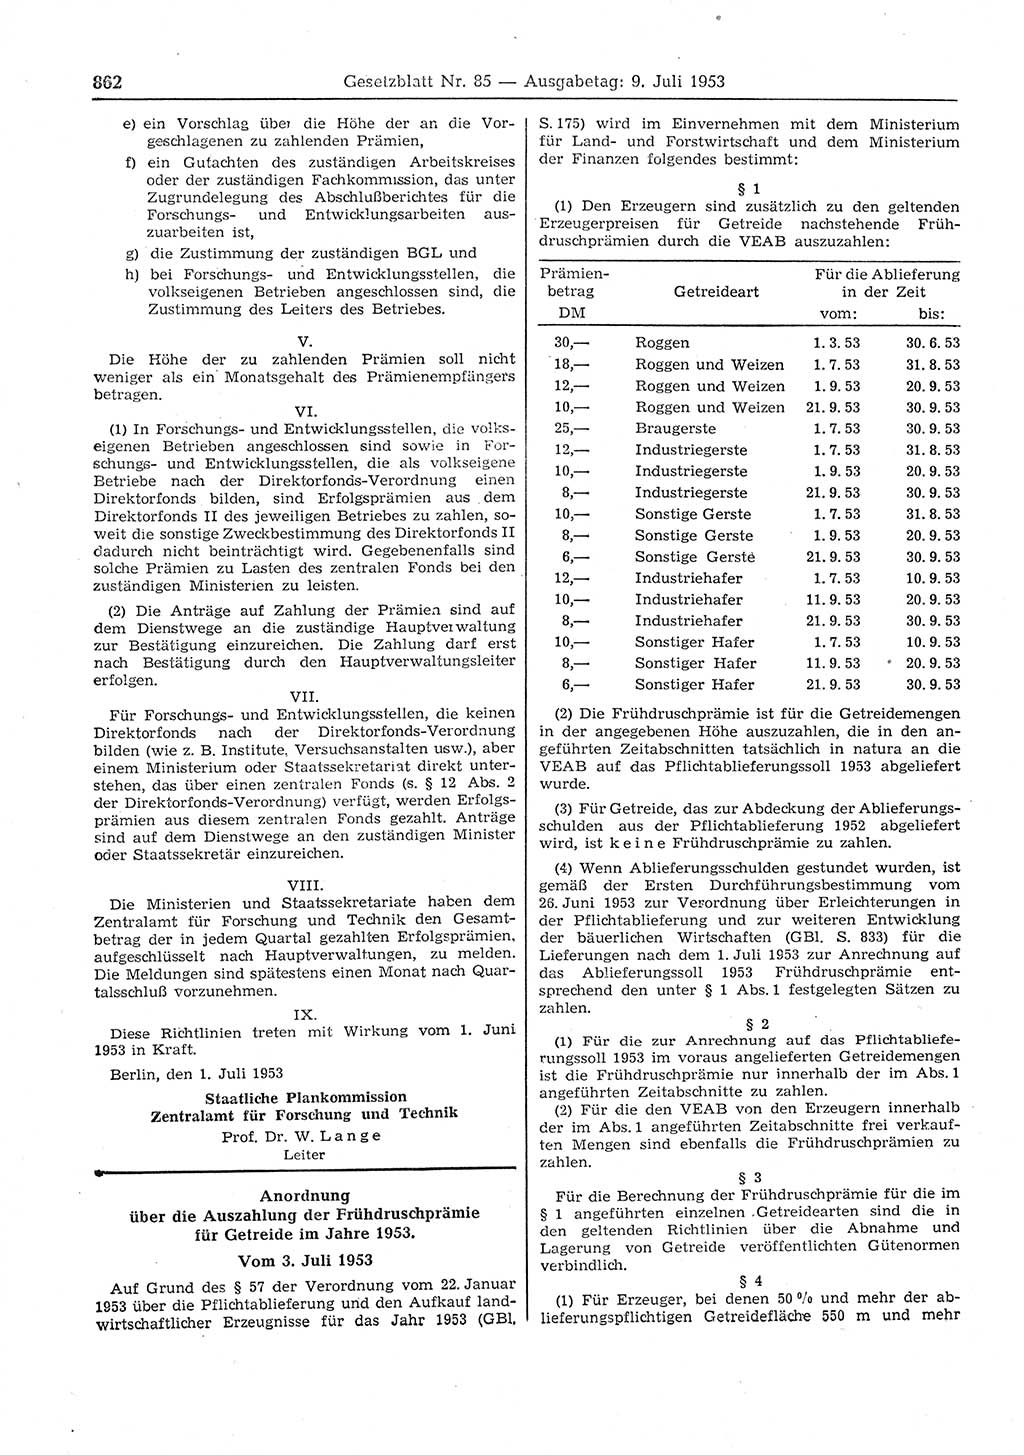 Gesetzblatt (GBl.) der Deutschen Demokratischen Republik (DDR) 1953, Seite 862 (GBl. DDR 1953, S. 862)